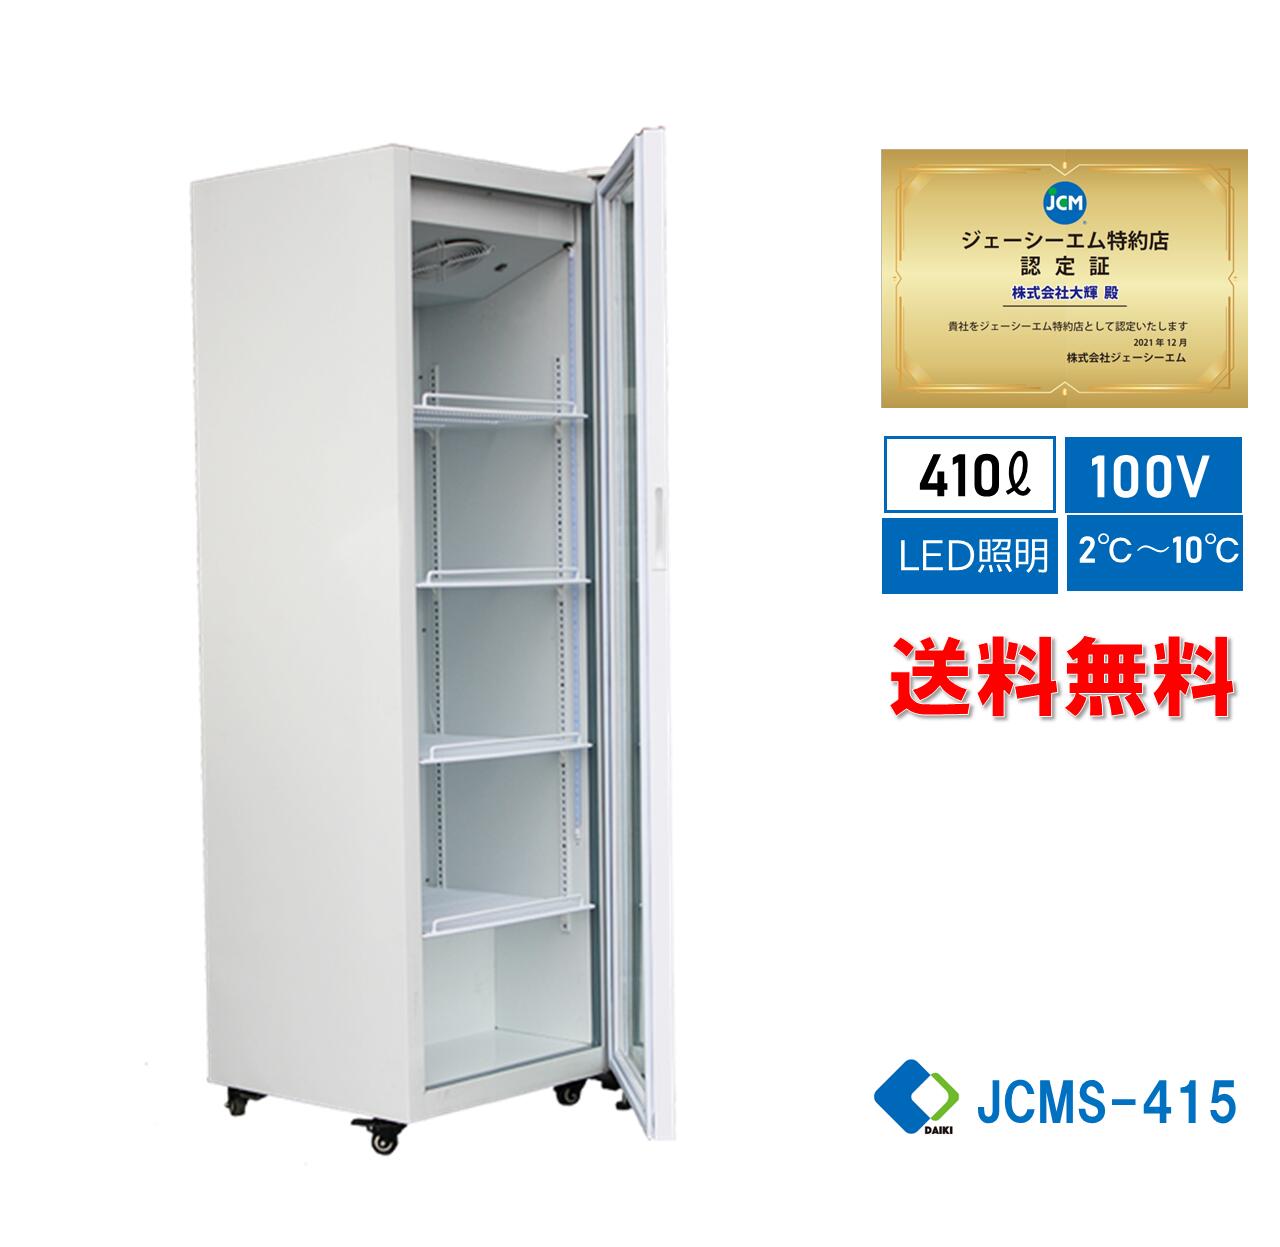 ☆助成金対象商品☆JCMS-415 業務用 JCM タテ型冷蔵ショーケース 